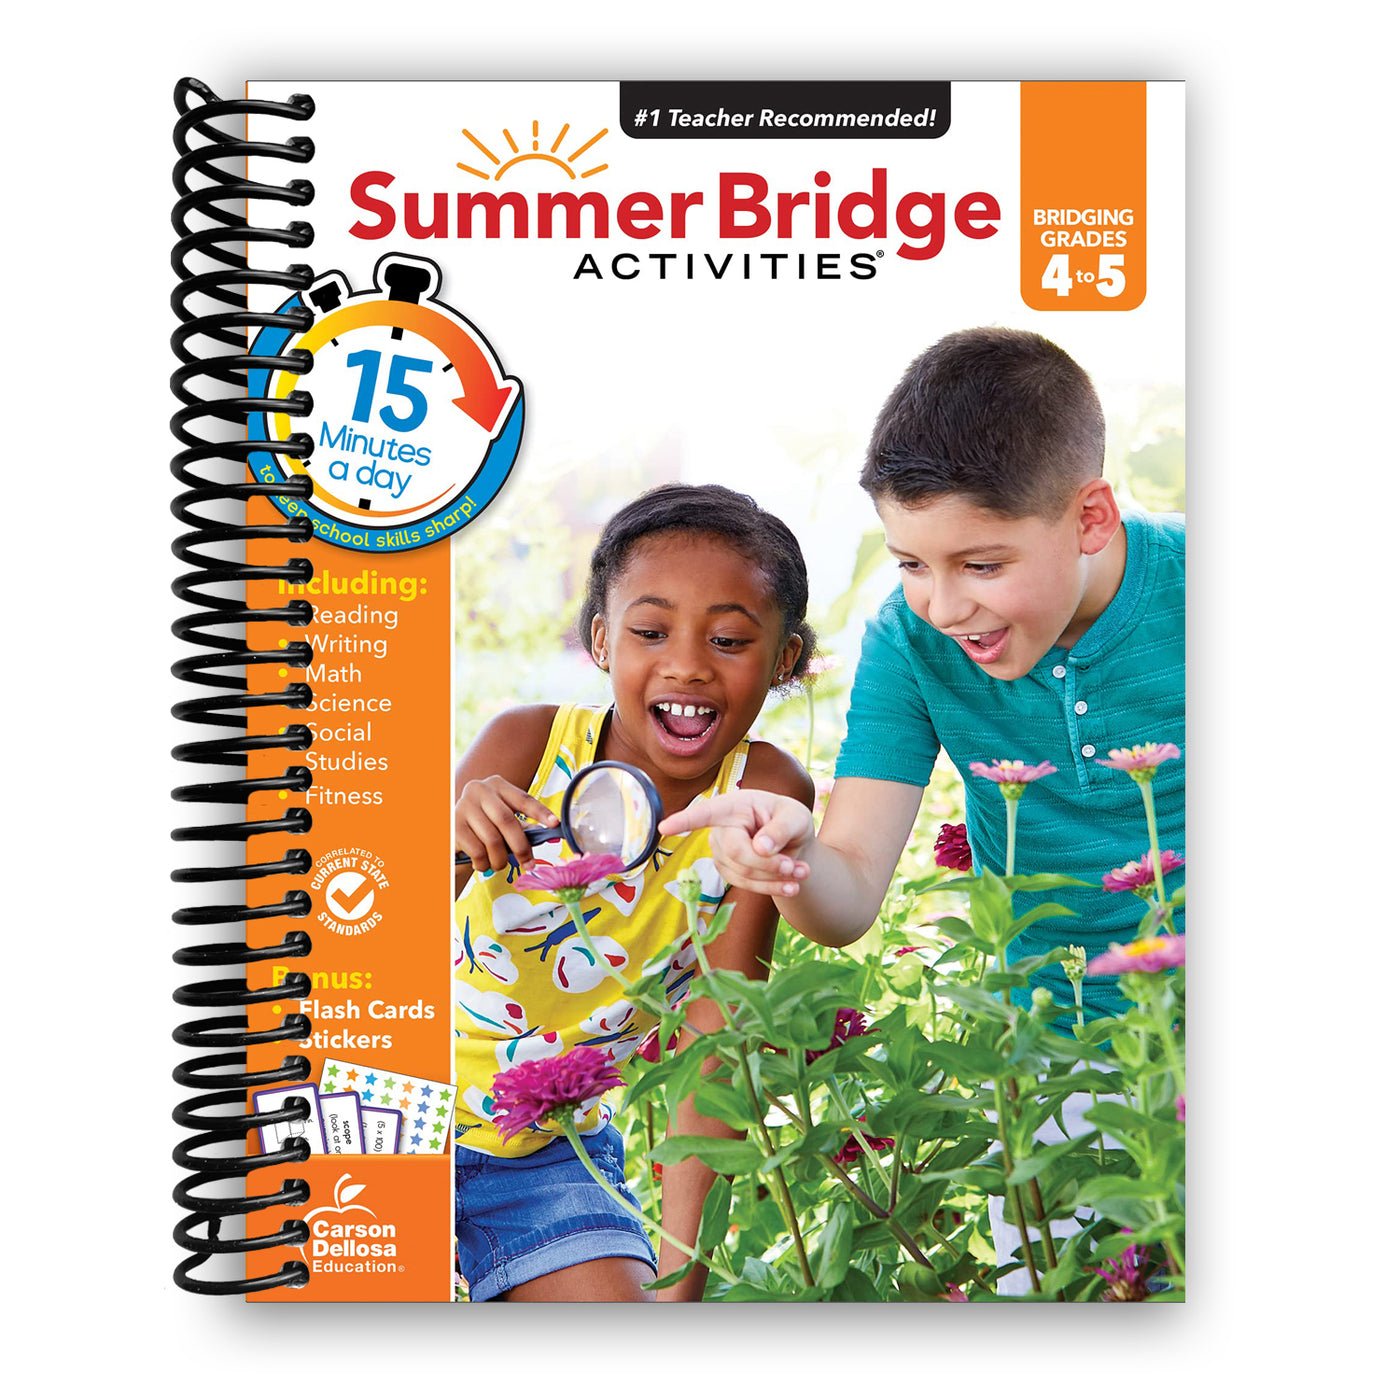 Summer Bridge Activities Workbook―Bridging Grades 4 to 5 in Just 15 Minutes a Day (Spiral Bound)